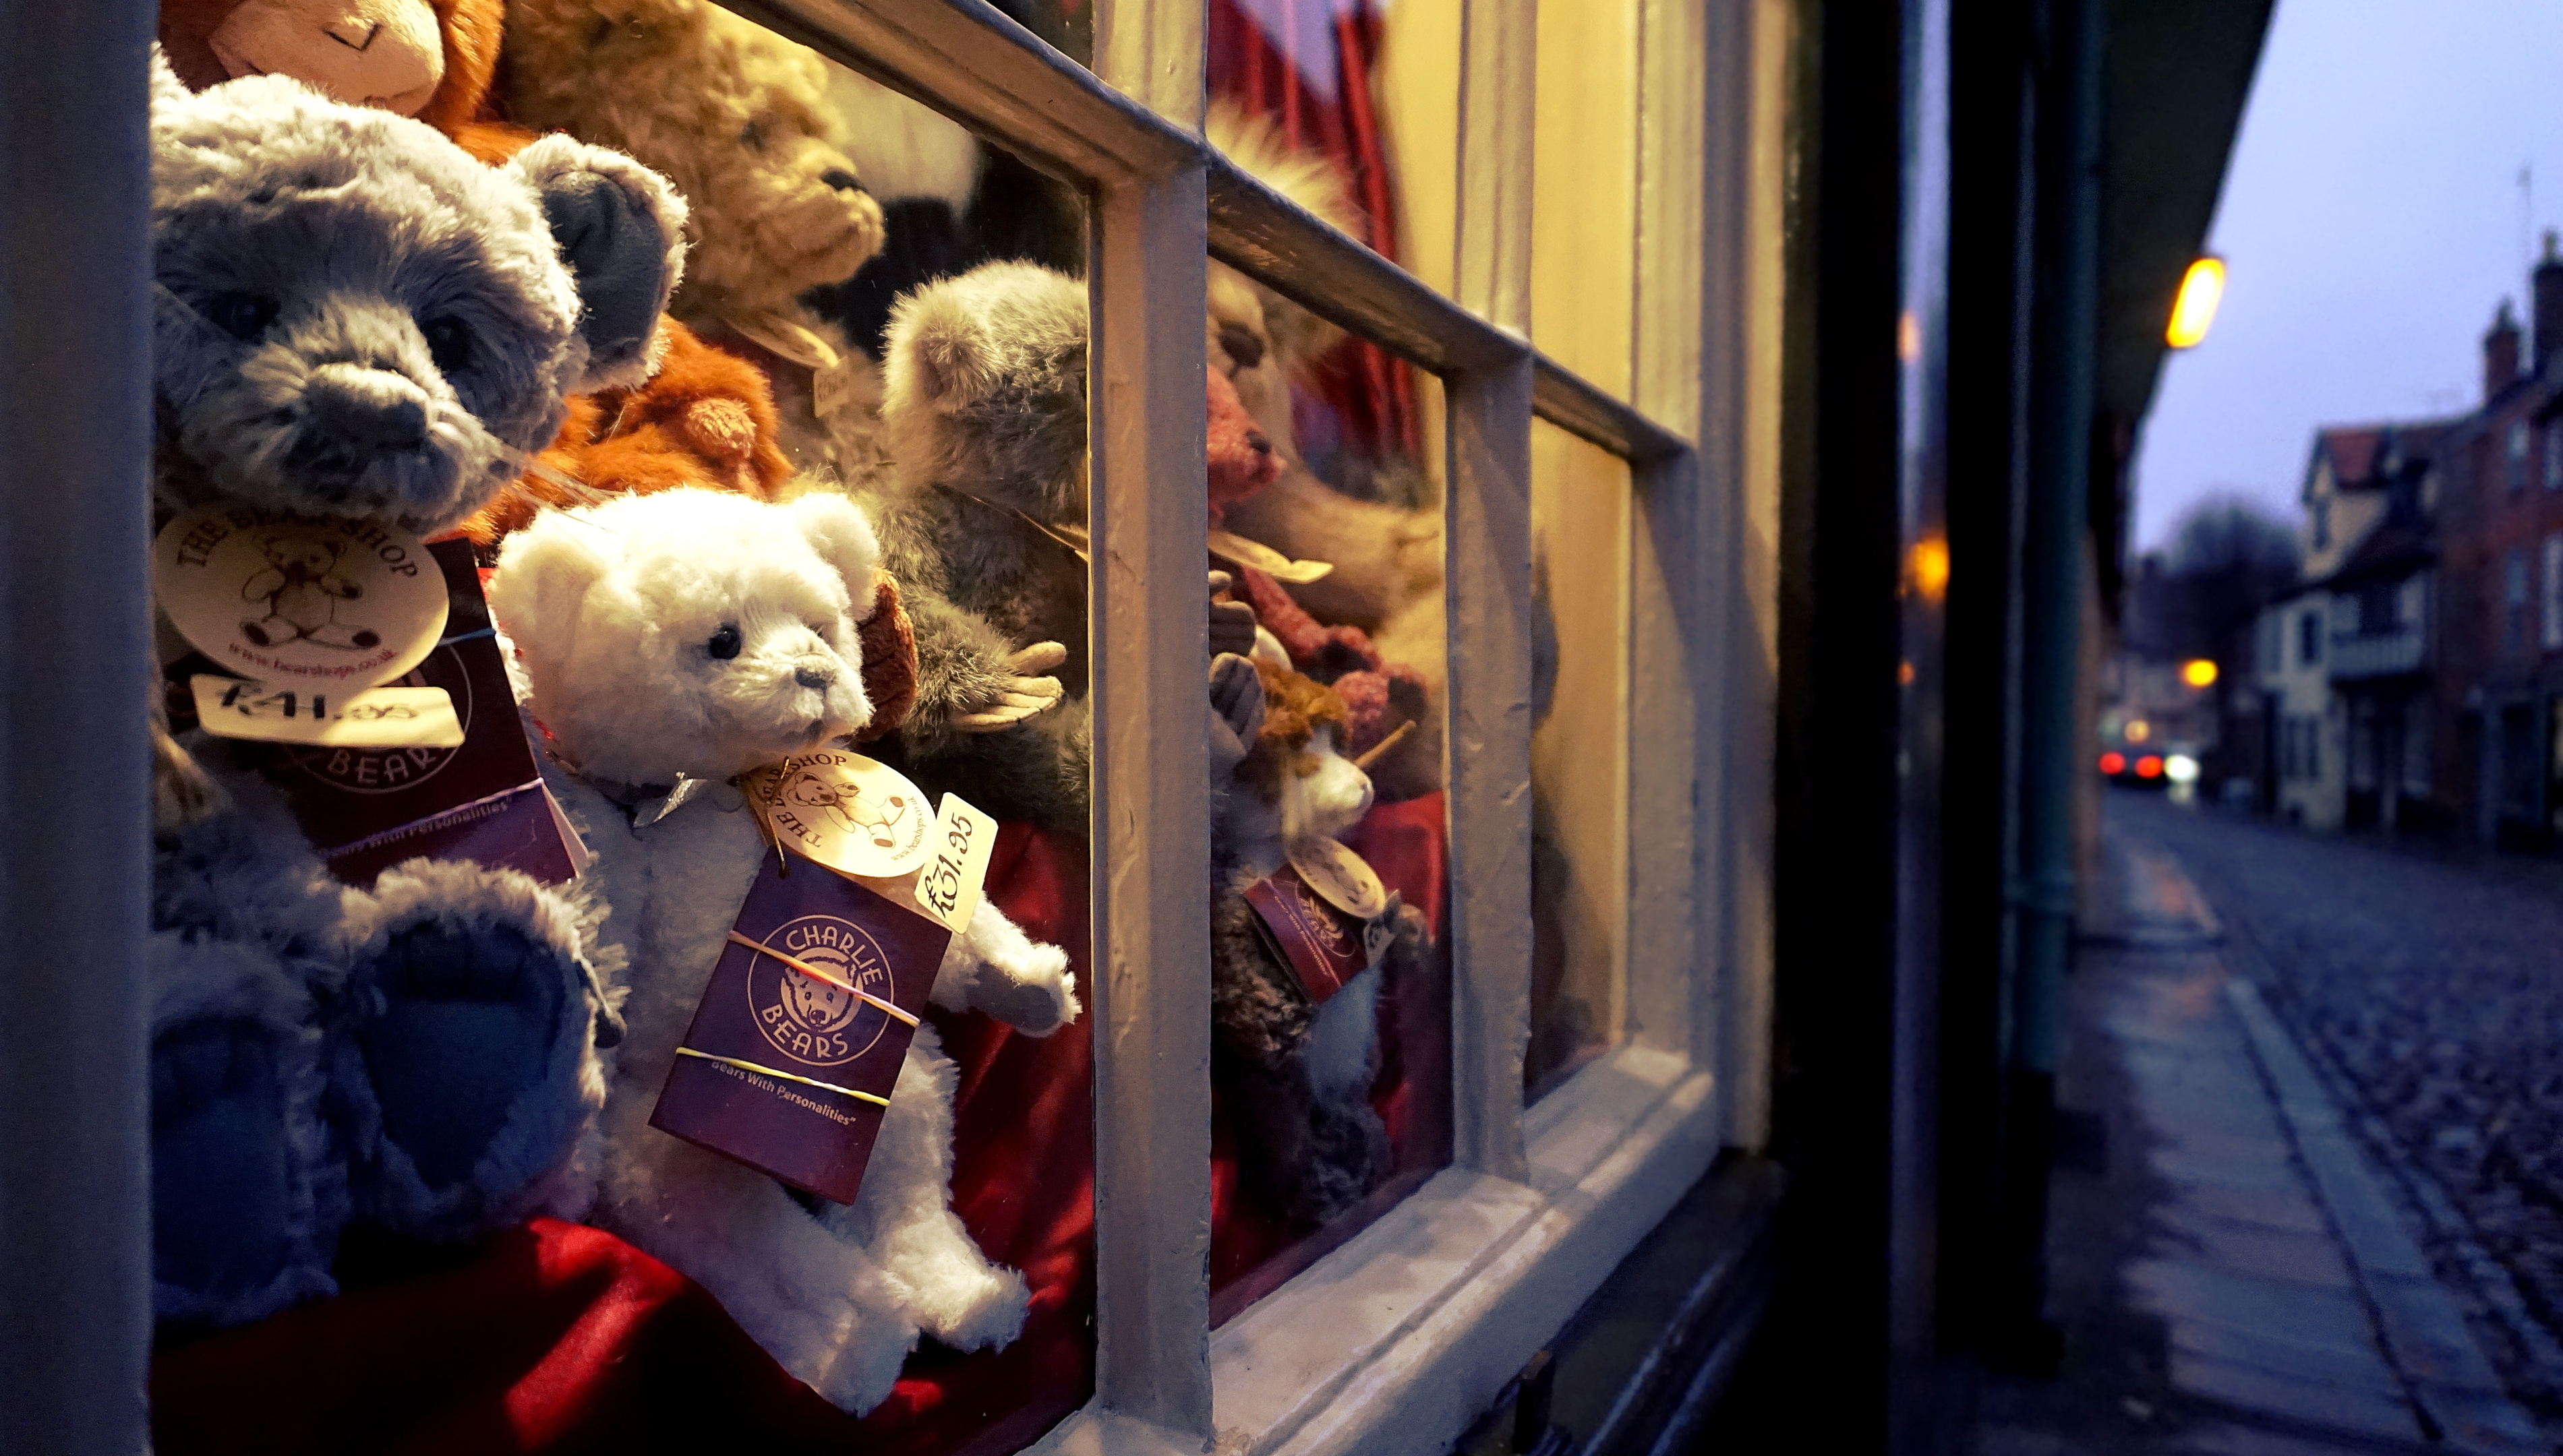 Teddy Bears in Store Window